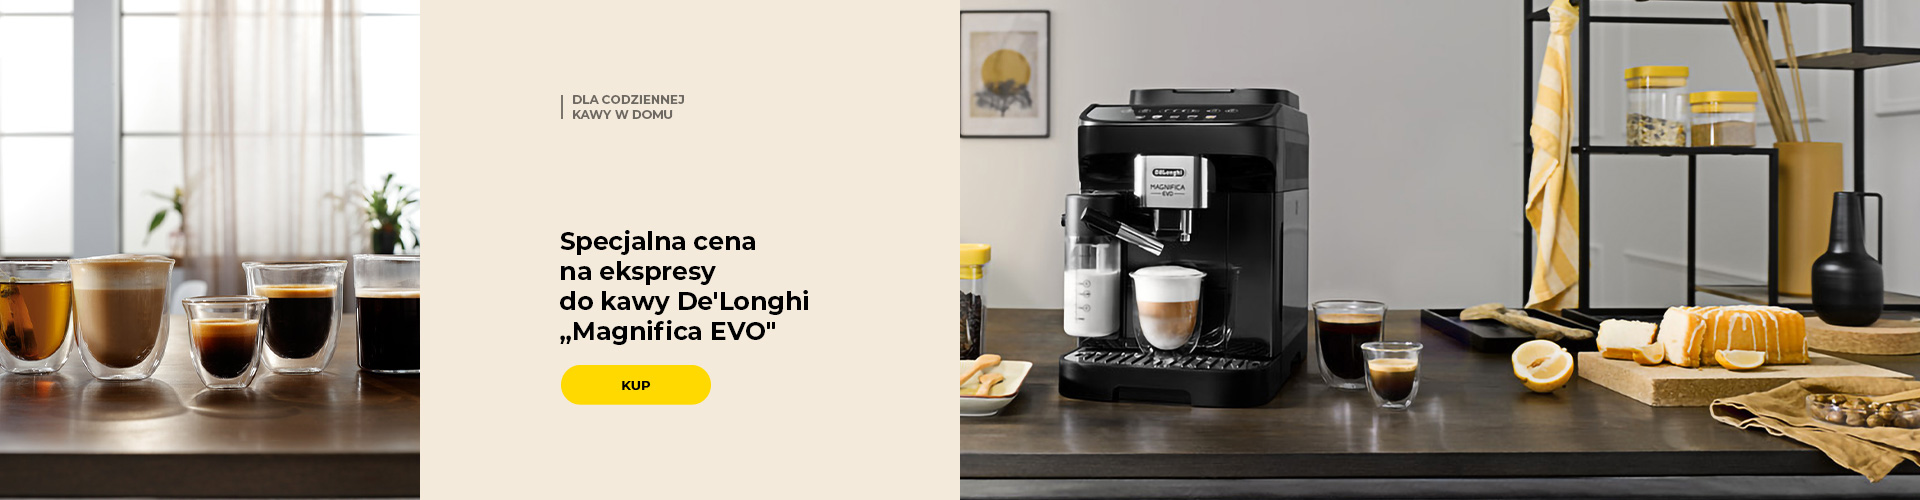 Specjalna cena na ekspresy do kawy De'Longhi „Magnifica EVO“